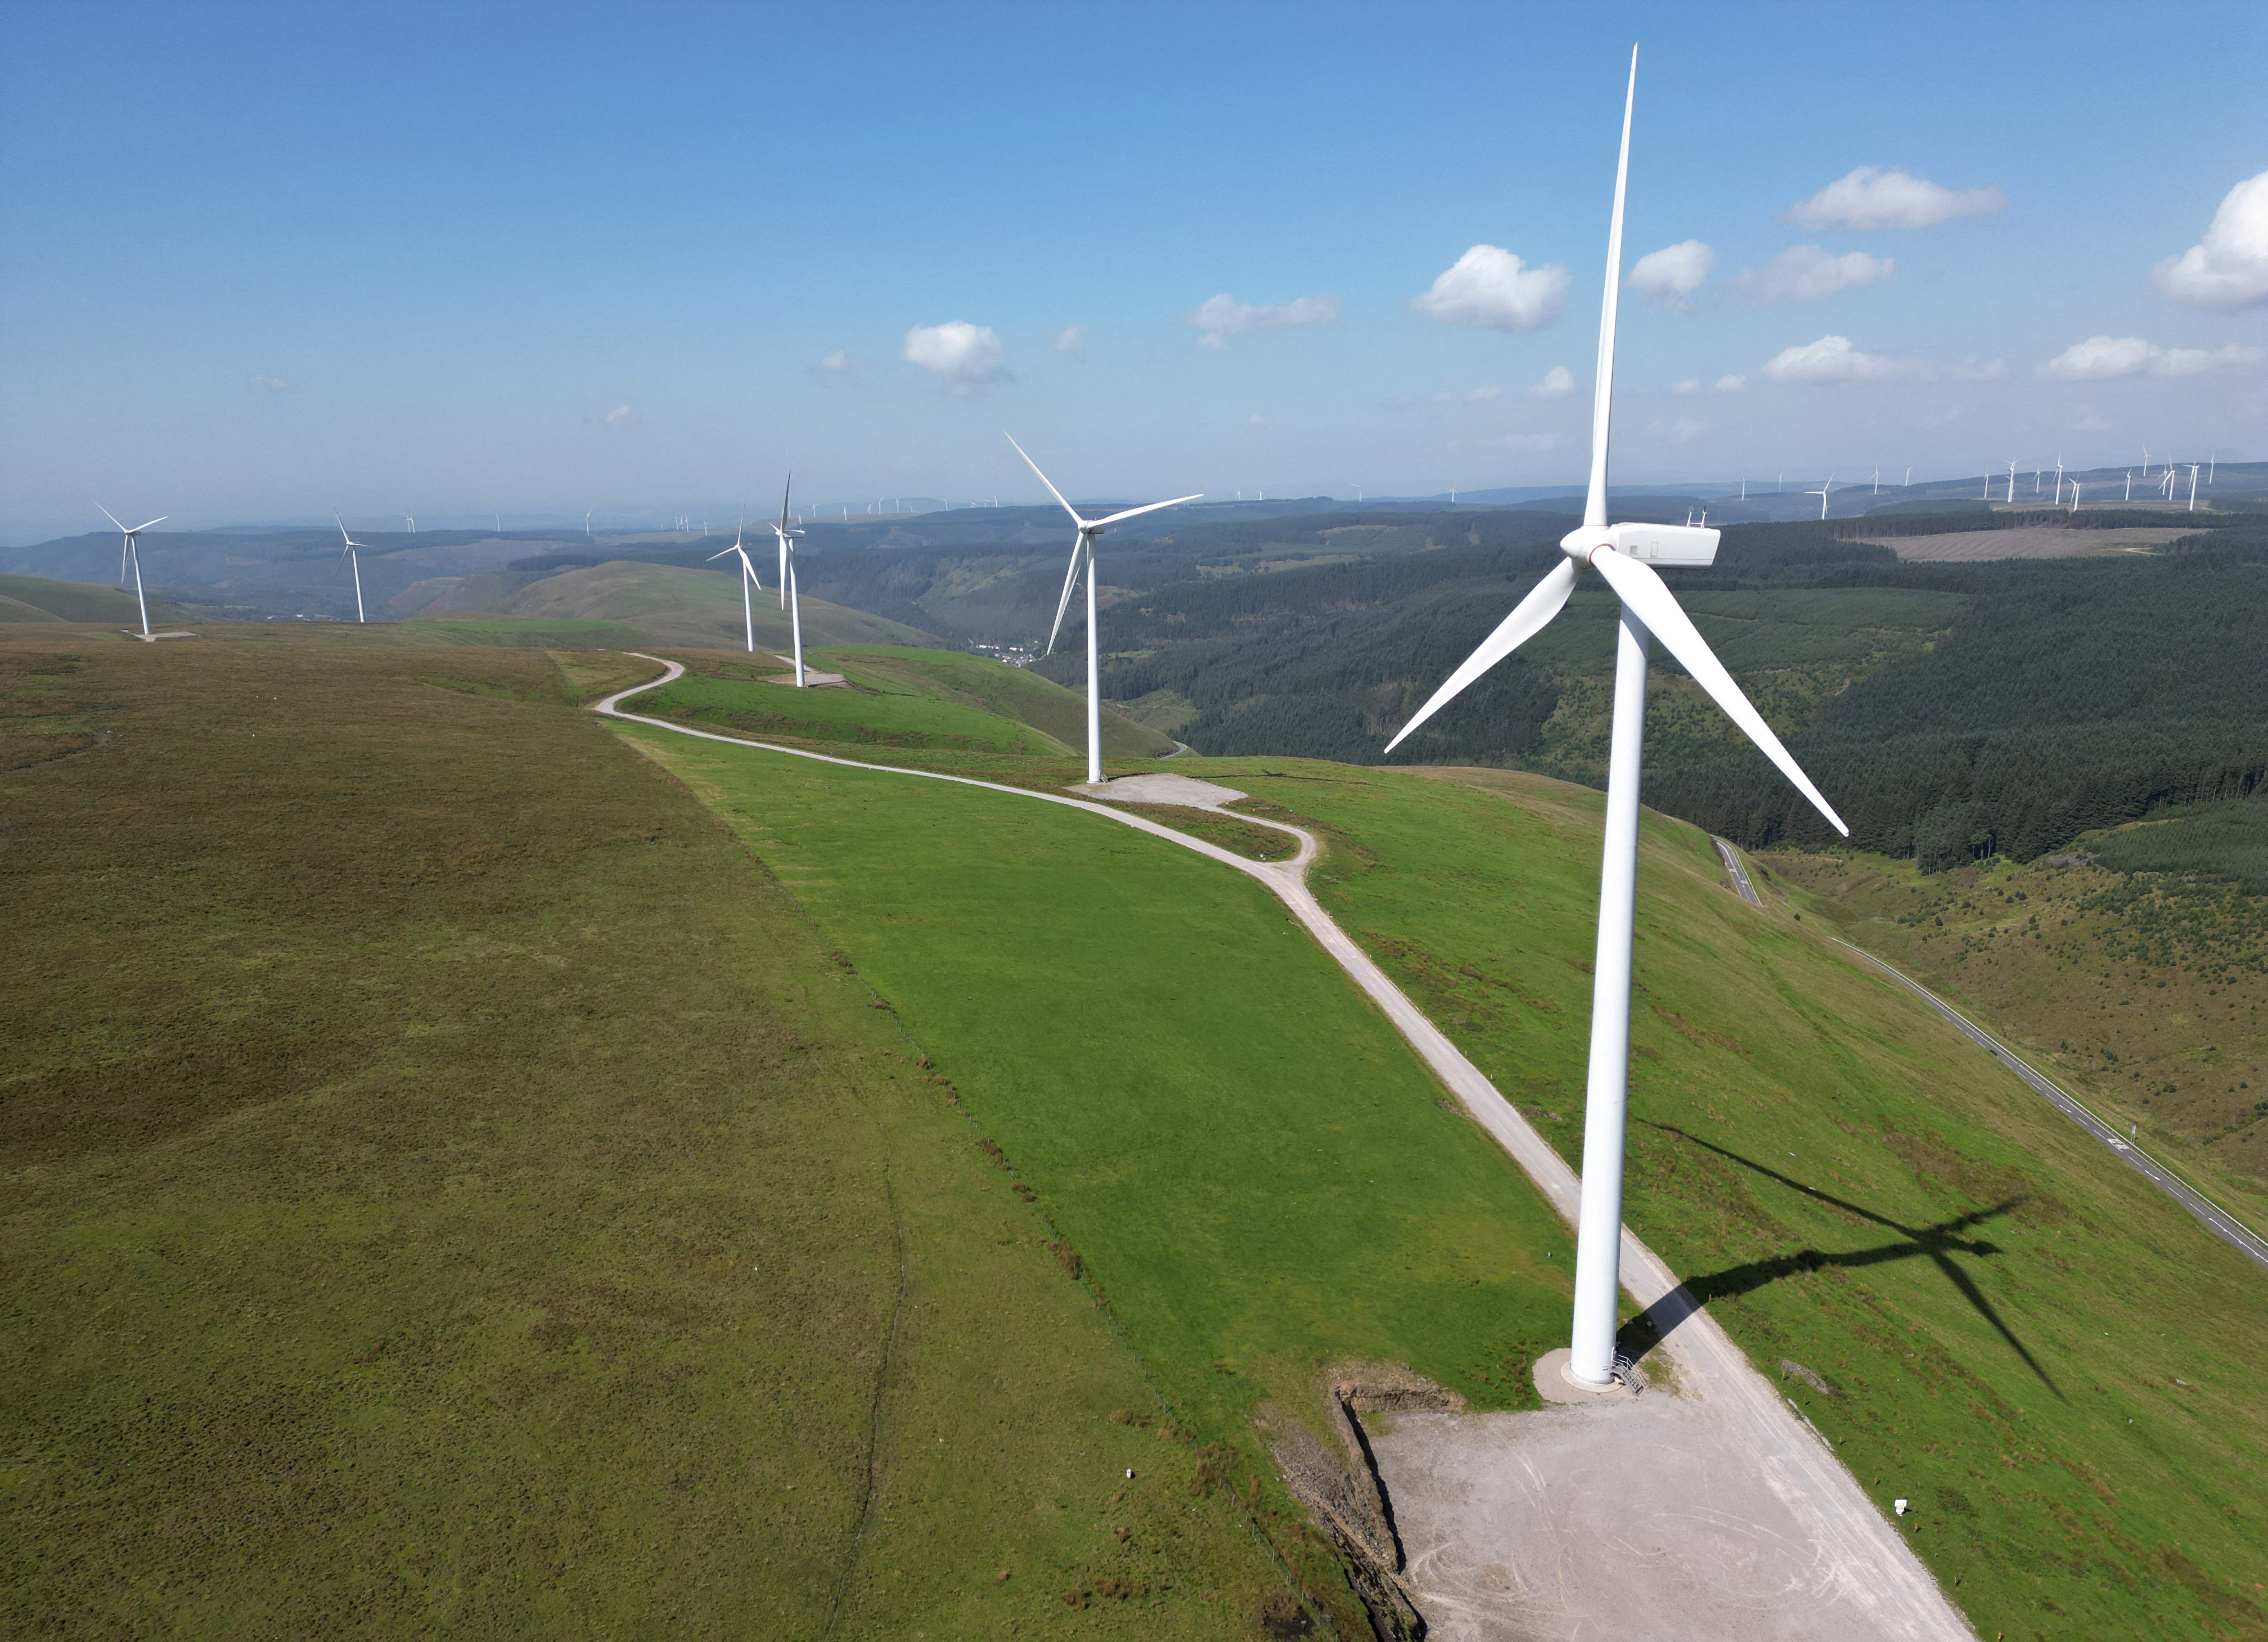 Wind turbines are seen at Llynfi Afan Wind Farm near Port Talbot in South Wales